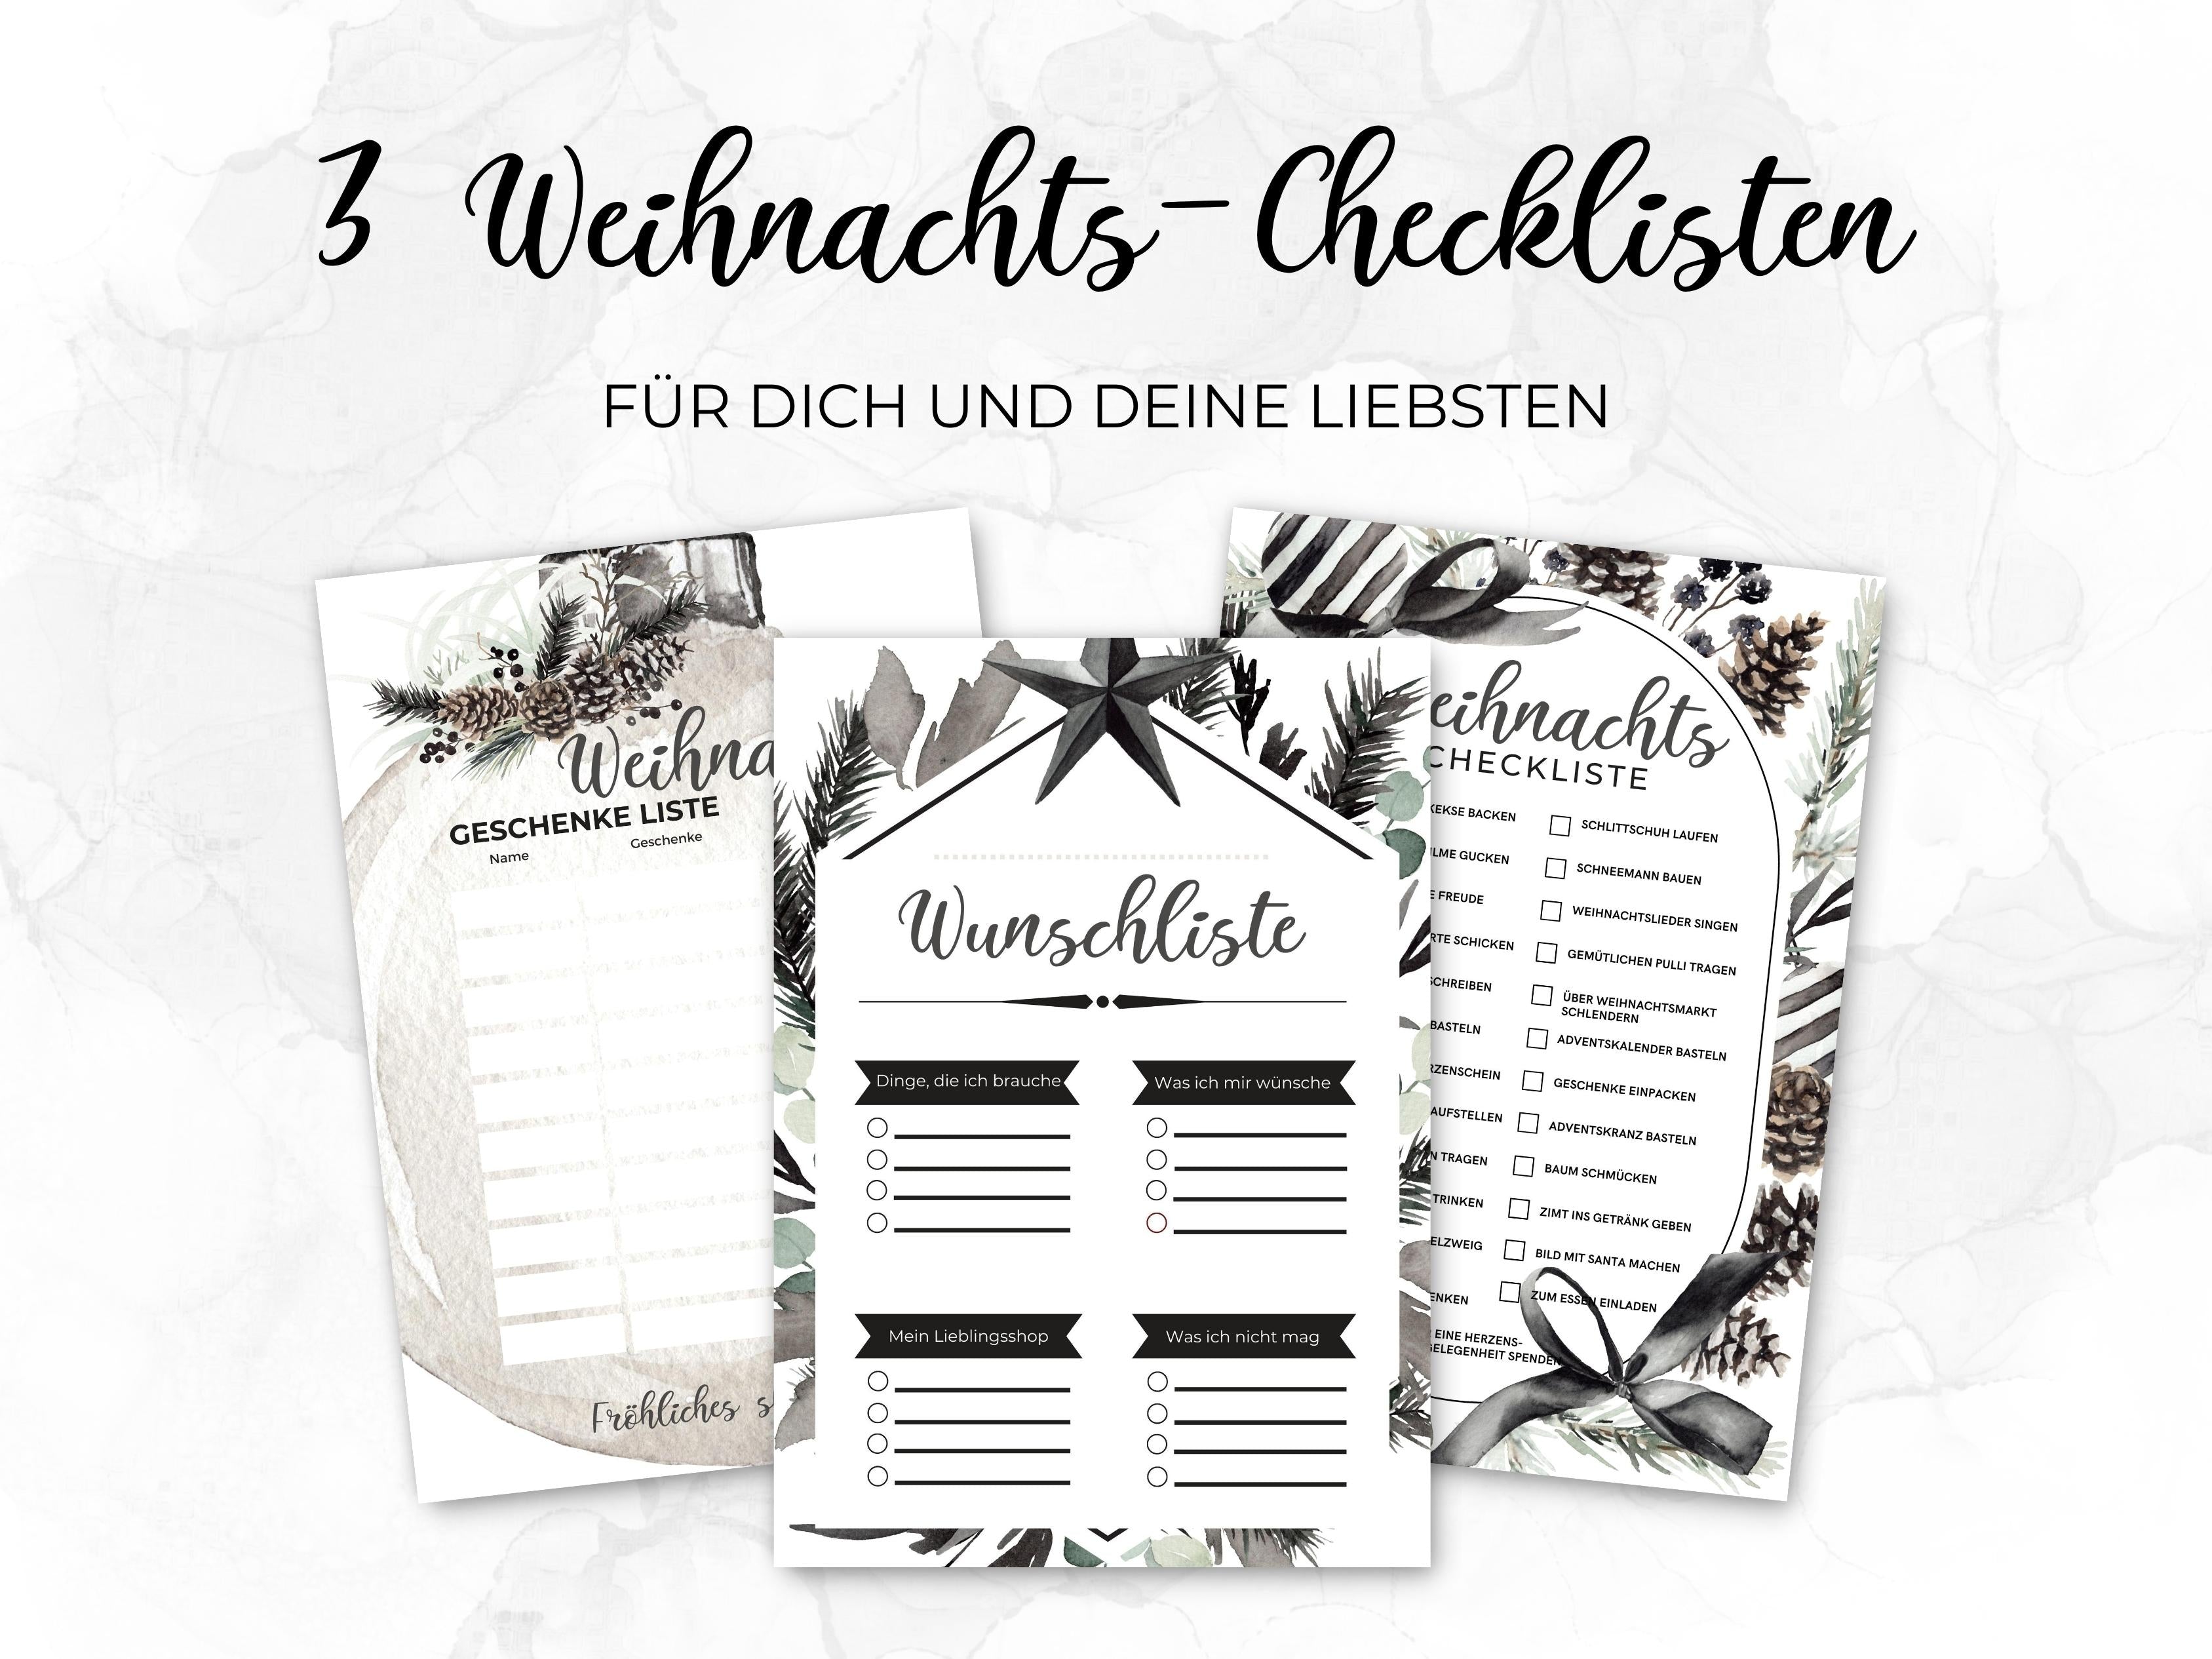 Weihnachten Checklisten in Schwarz-weiß